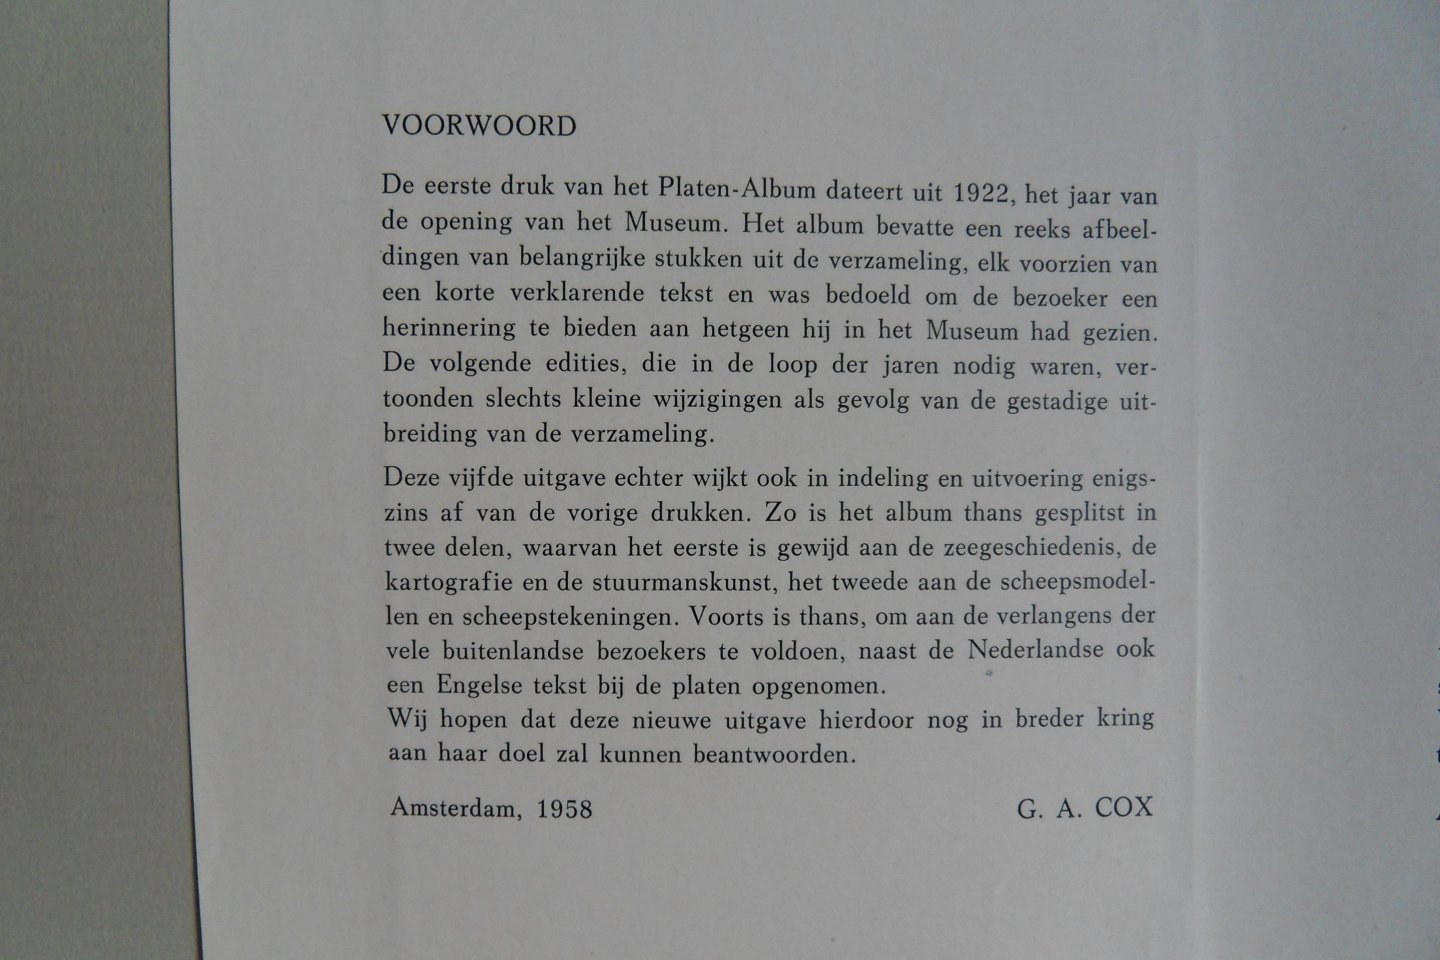 Cox, G.A. (inleiding). - Nederlandsch Historisch Scheepvaart Museum. Platen-Album / Album of Plates. [ De beide delen hier in één koop ].